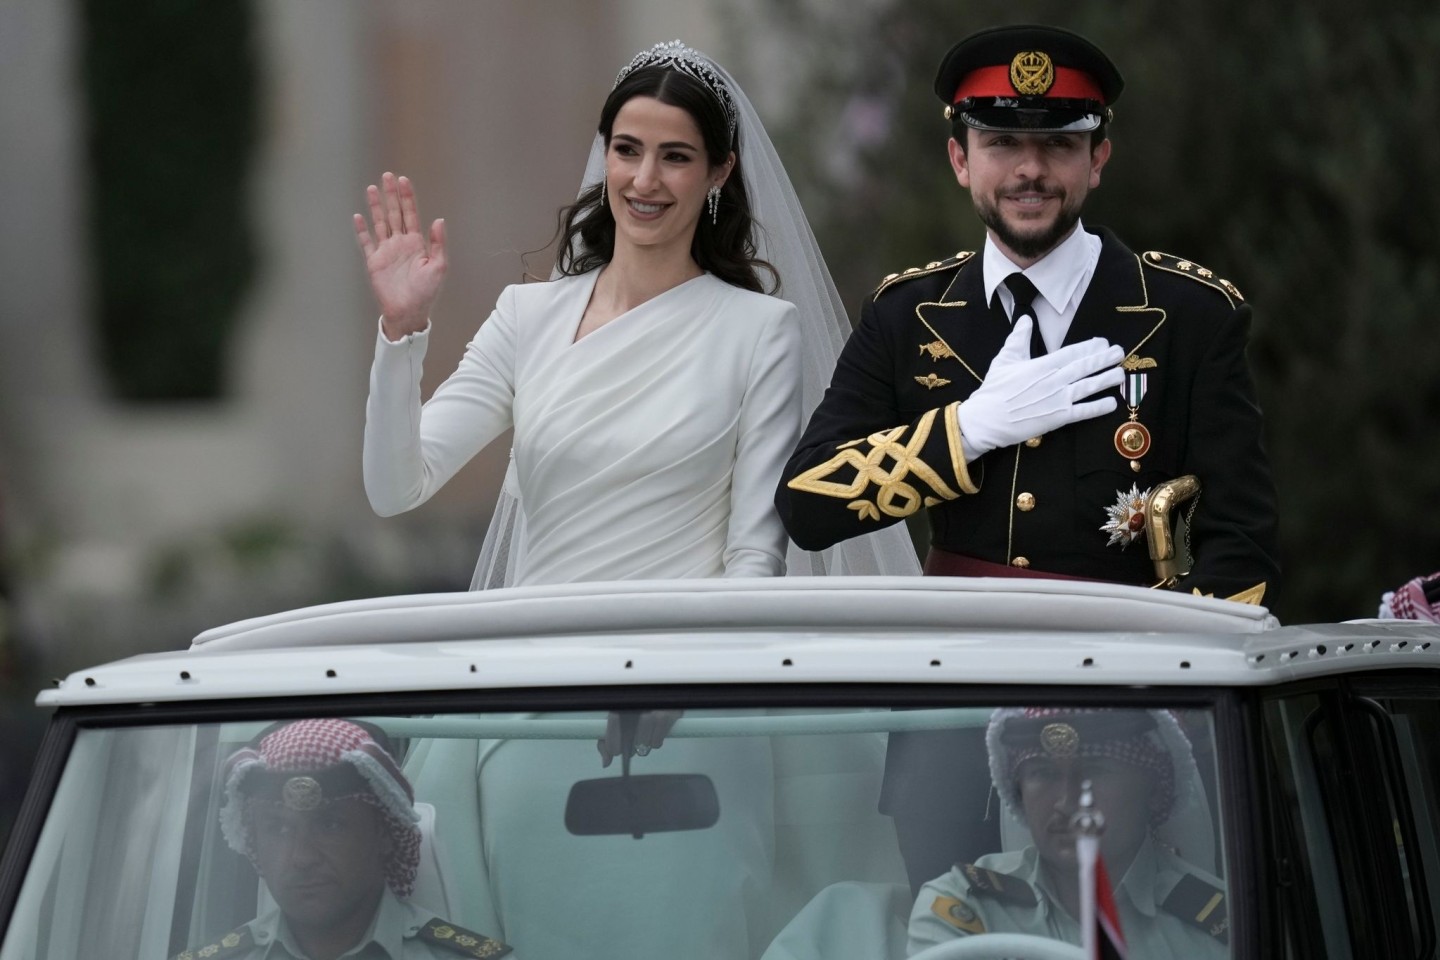 Das glückliche Brautpaar: Kronprinz Hussein bin Abdullah und Radschwa Al Saif fahren in einem offenen Wagen durch Amman.